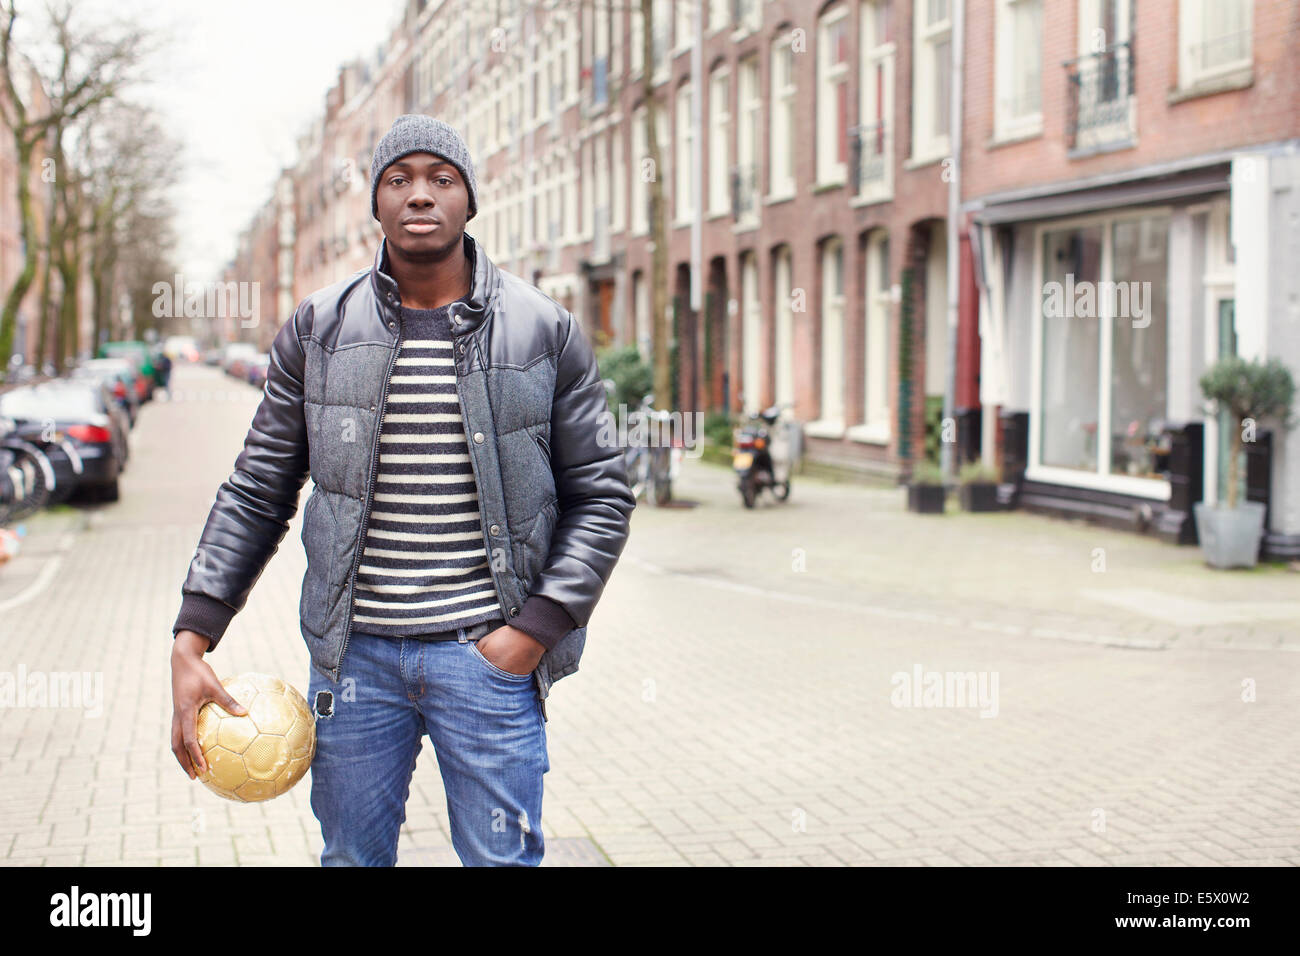 Porträt des jungen Mannes auf Straße halten Fußball, Amsterdam, Niederlande Stockfoto